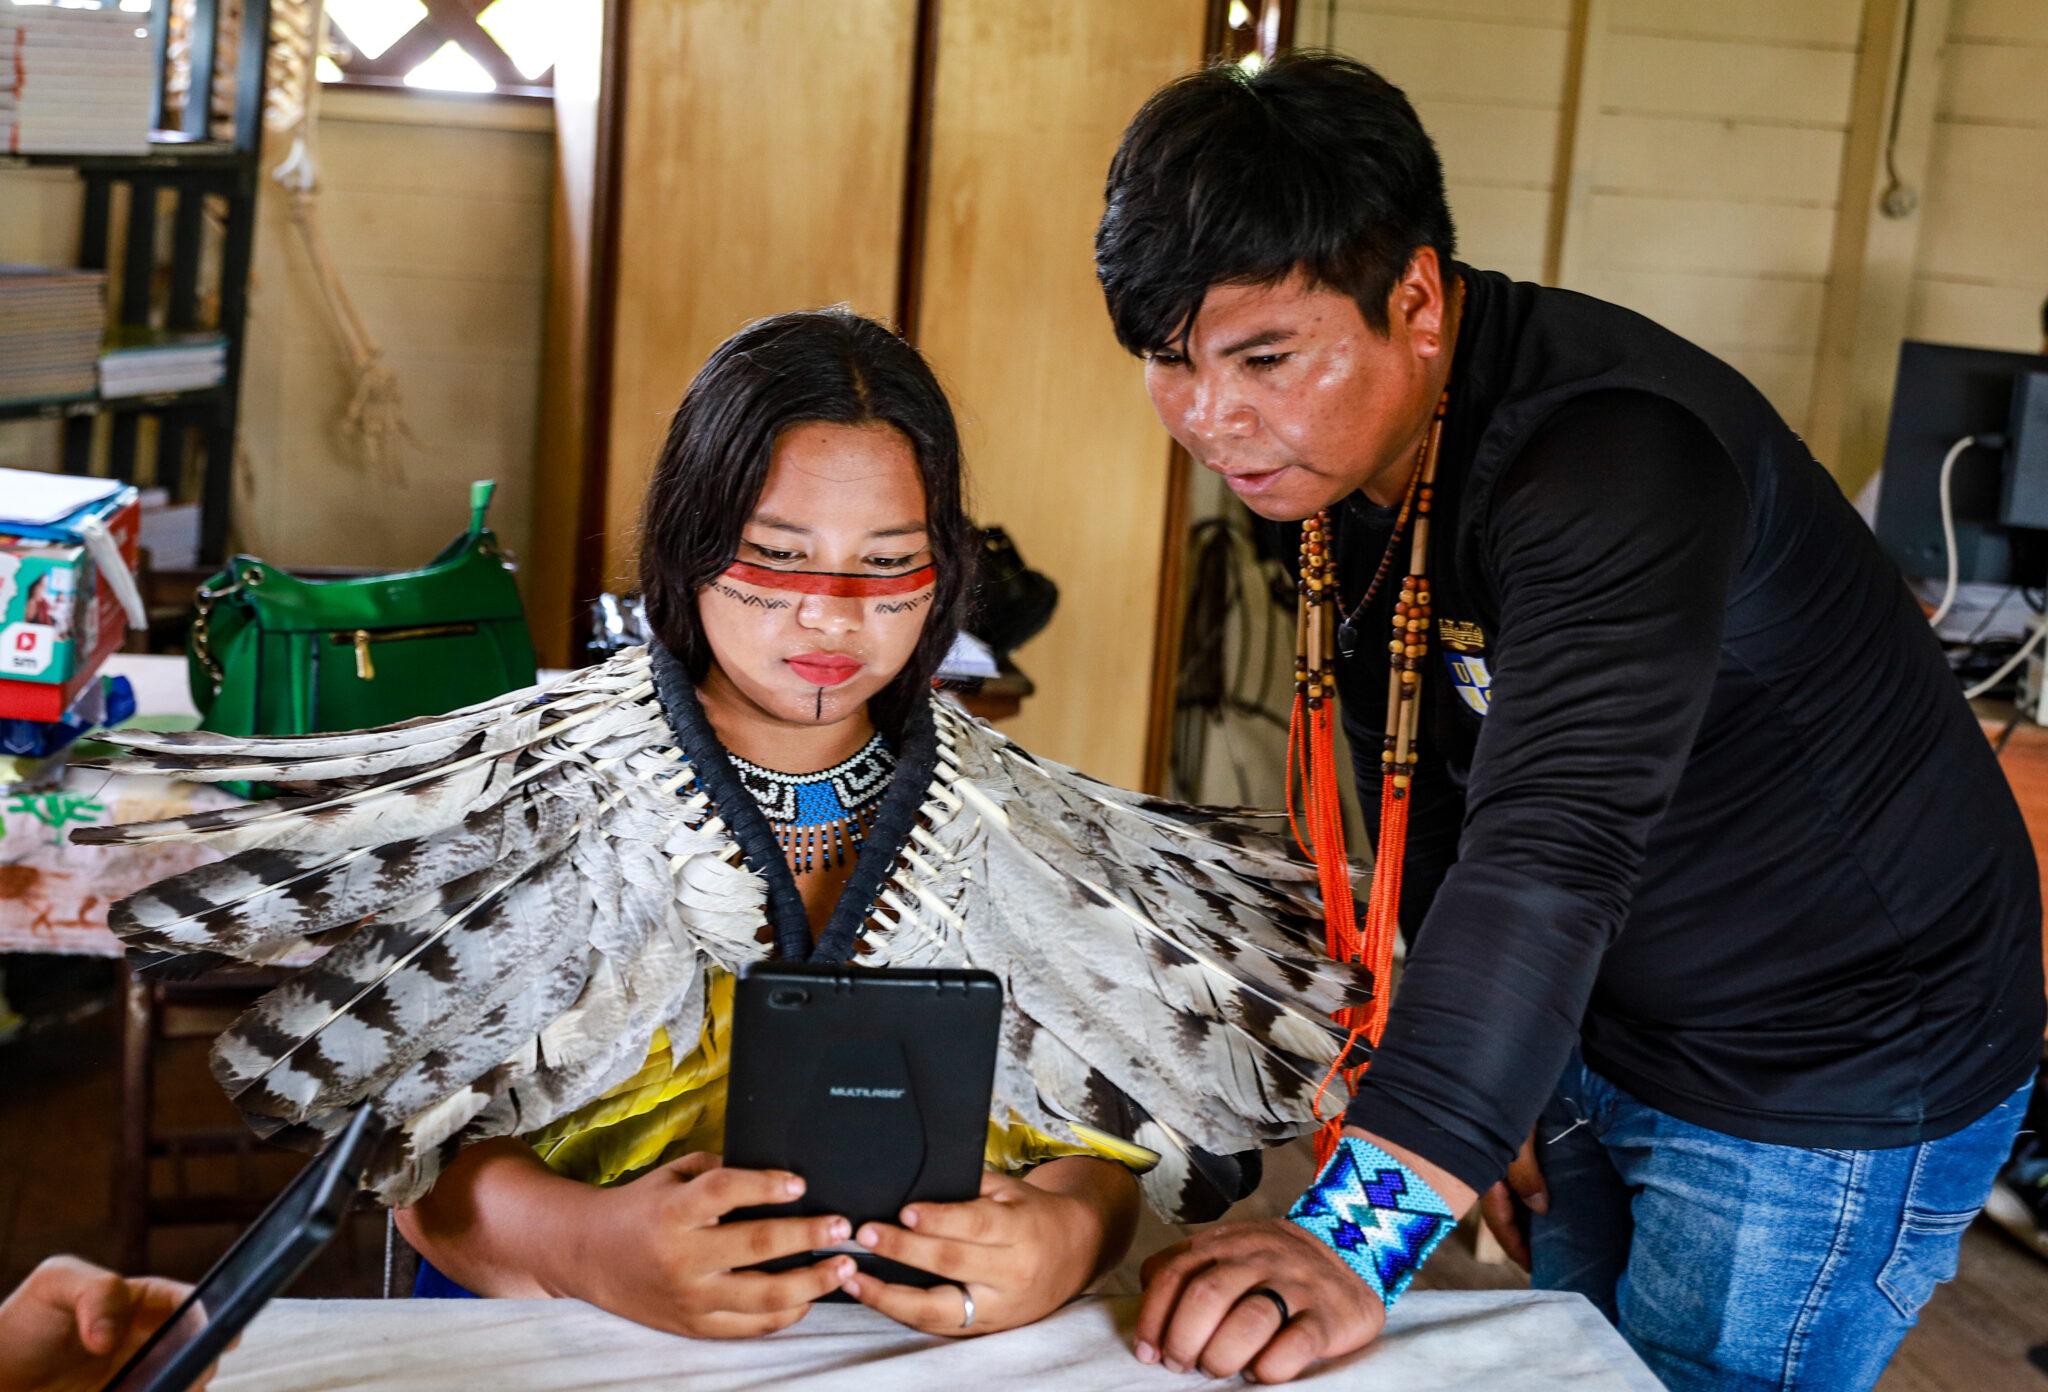 Entrega de tablets em escolas indígenas fortalece educação e preserva cultura: ‘internet veio para somar’